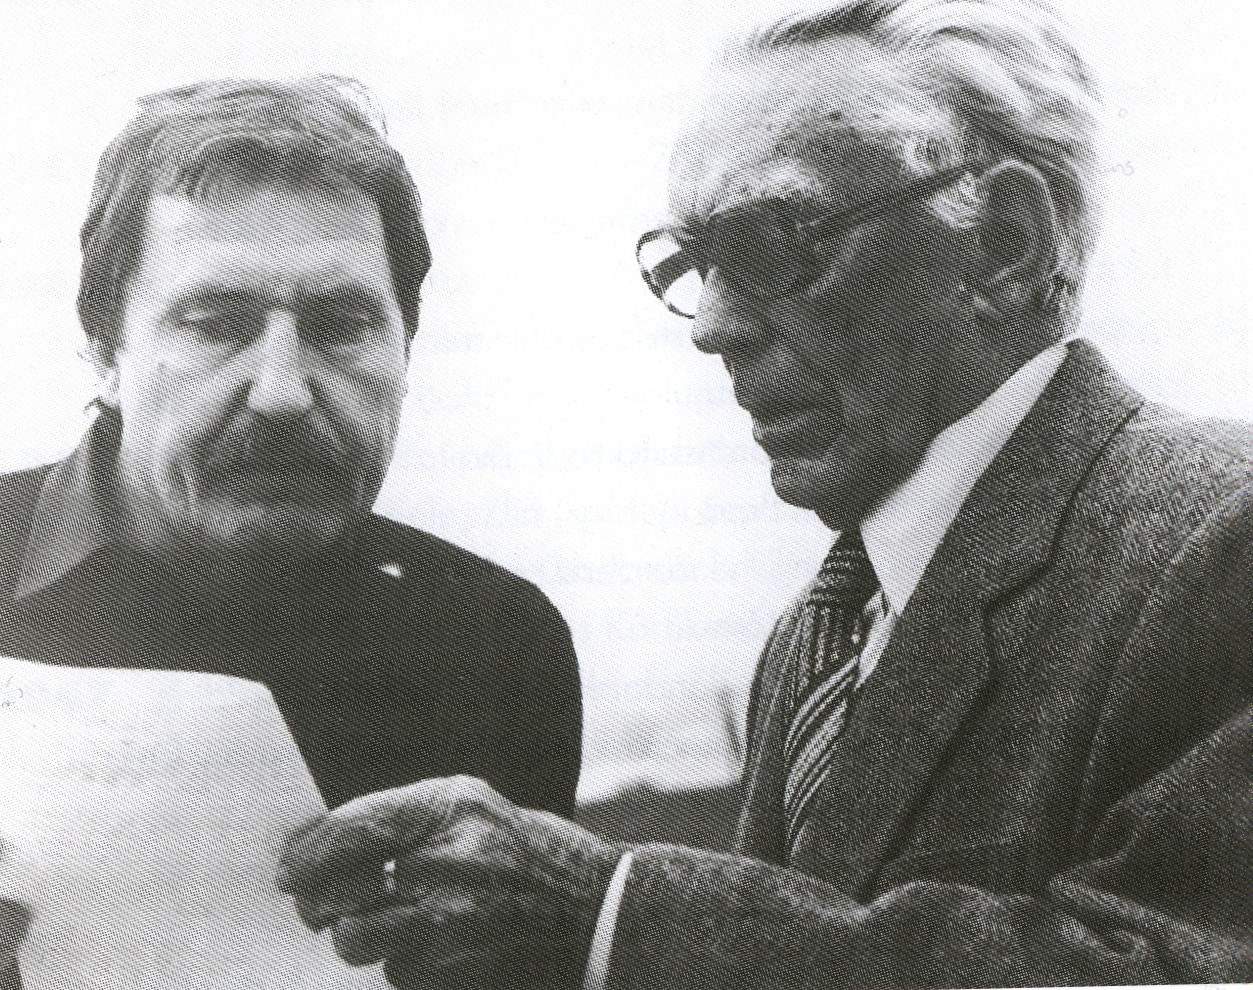 Štefan Šlachta a Vladimír Karfík, 1981. Foto S. Toman. (Z publikácie Šlachta, Š.: Vladimír Karfík. Architekt 20. storočia, Spolok architektov Slovenska) 